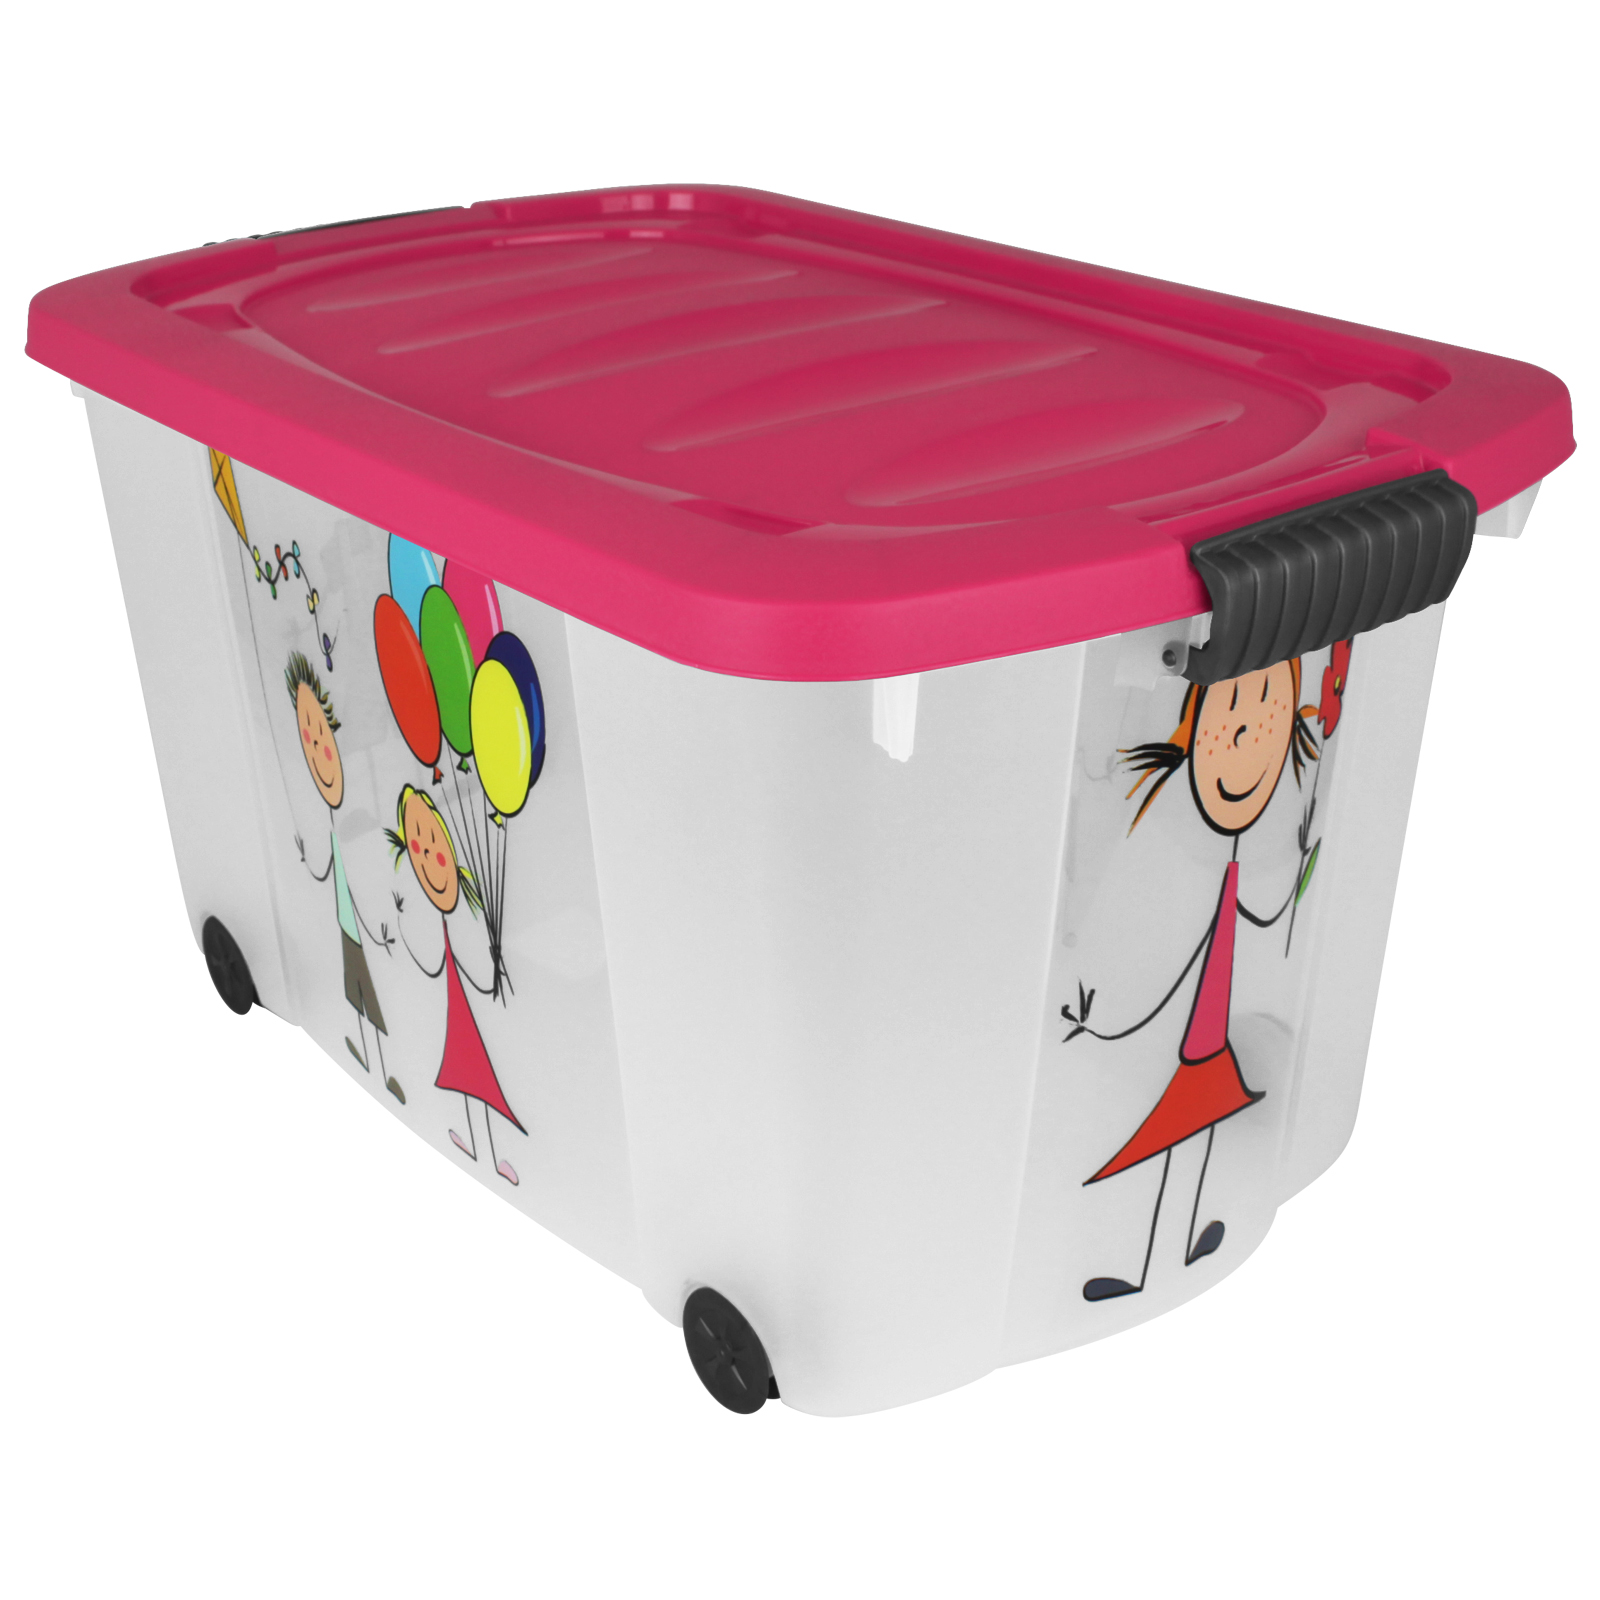 NEU stapelbar Aufbewahrungsbox Spielzeugkiste CUBY auf Rollen dusty pink 